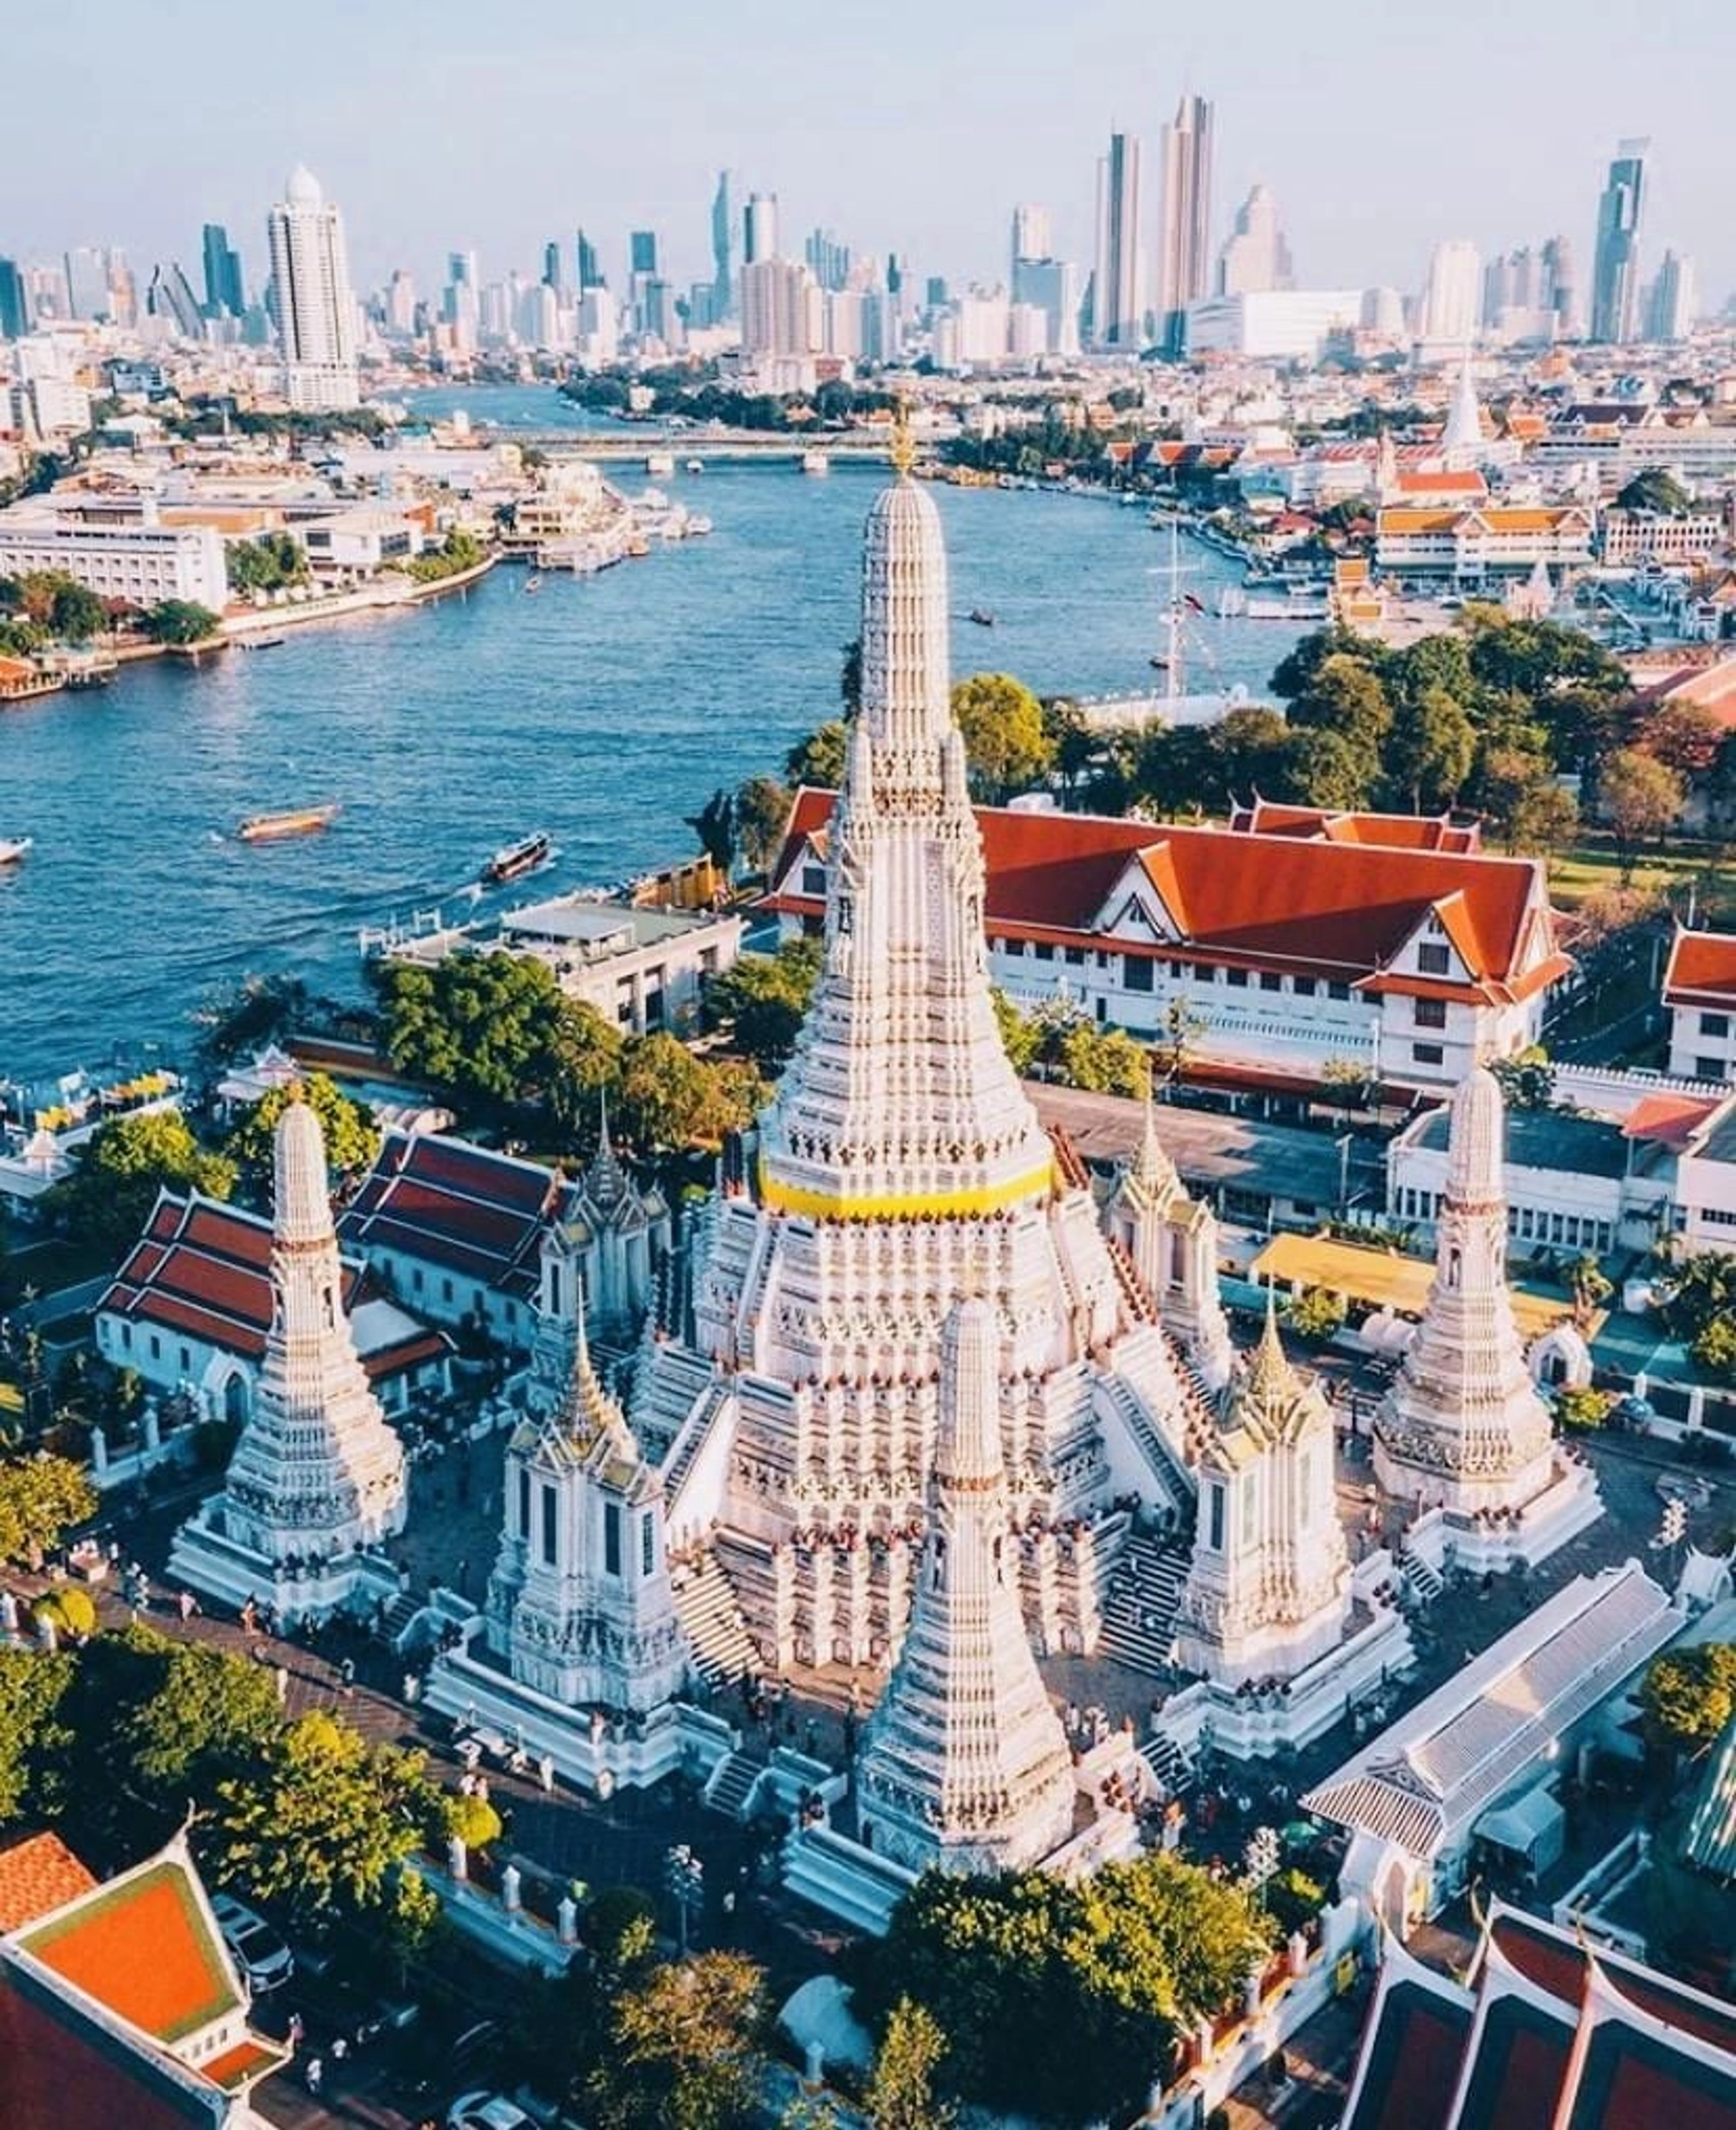 Khám phá những điều thú vị và vô cùng đặc biệt tại chùa Wat Phra Kaew